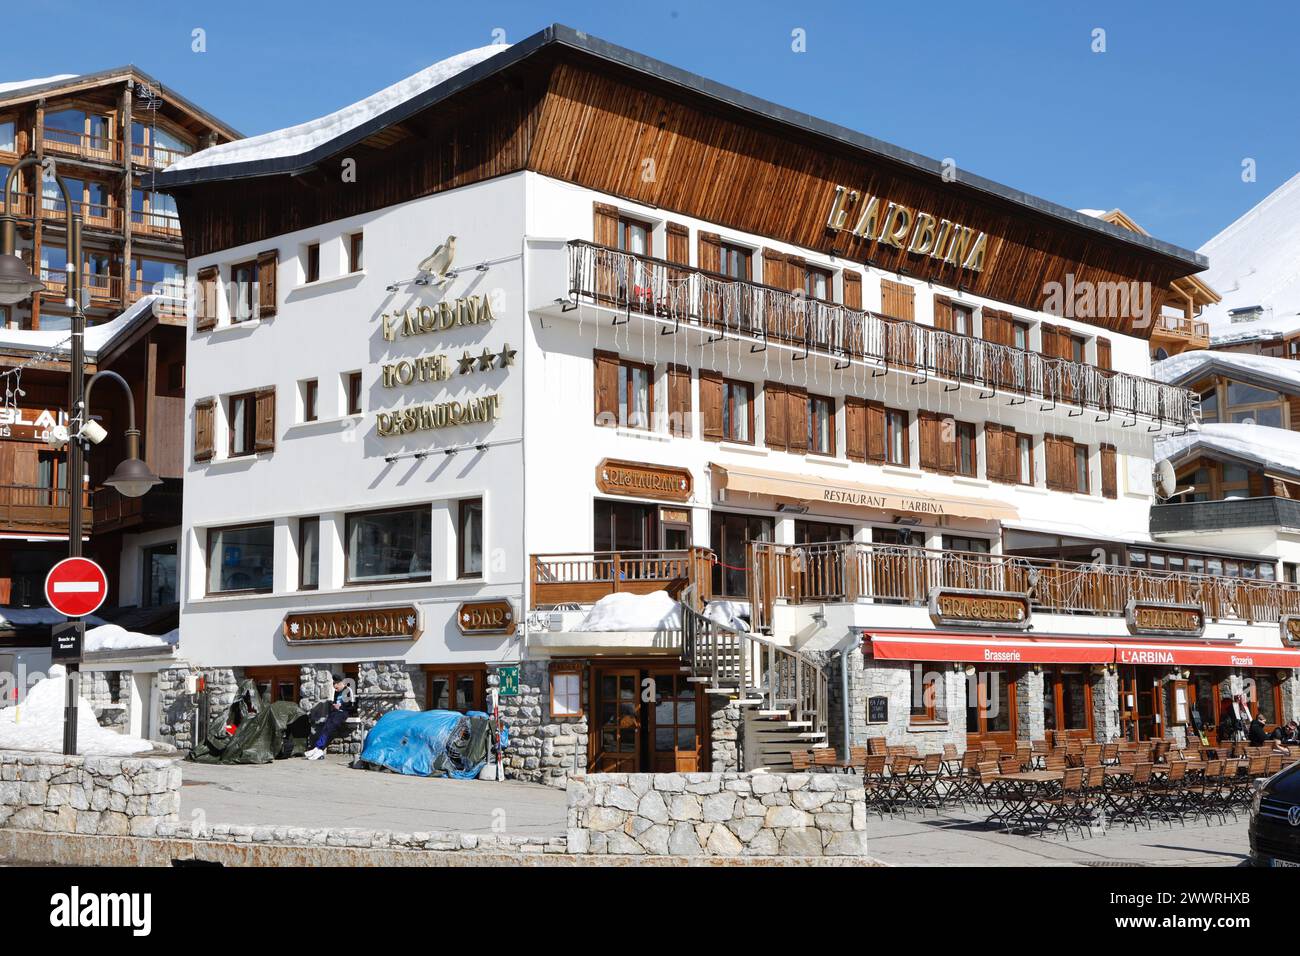 La Promenade du Tovière dans la station de ski de Tignes, en France, possède quelques-uns des rares bâtiments restants à avoir conservé leur architecture originale des années 1960. Banque D'Images